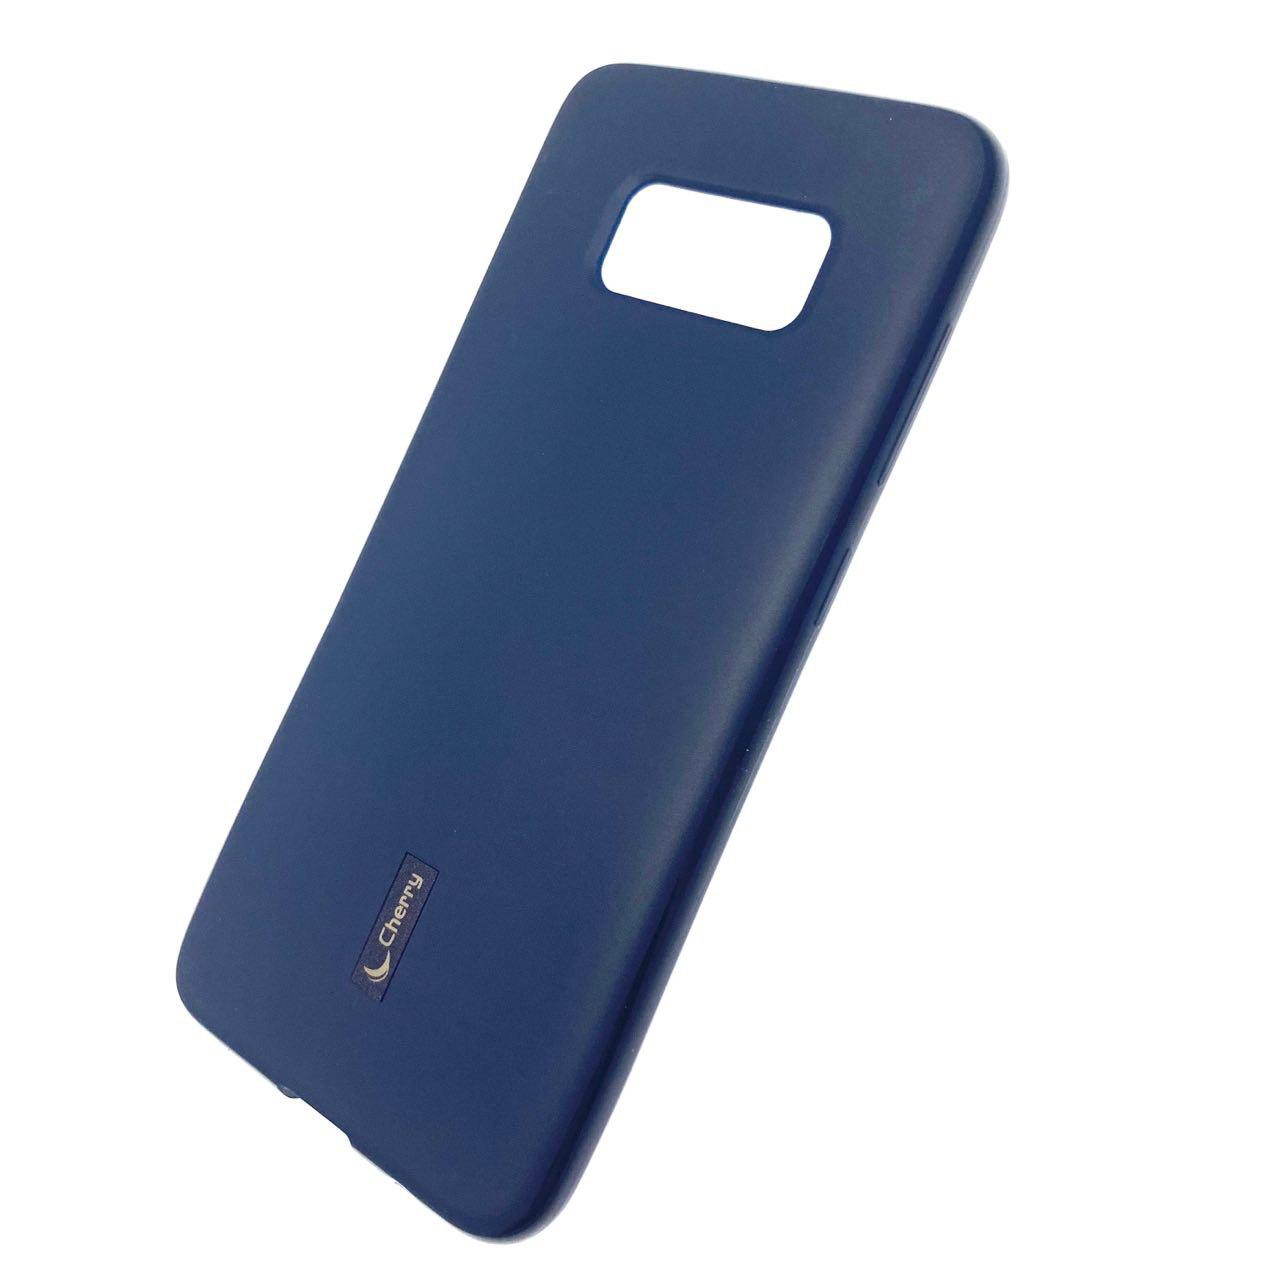 Чехол накладка Cherry для SAMSUNG Galaxy S8 (SM-G950), силикон, цвет синий.